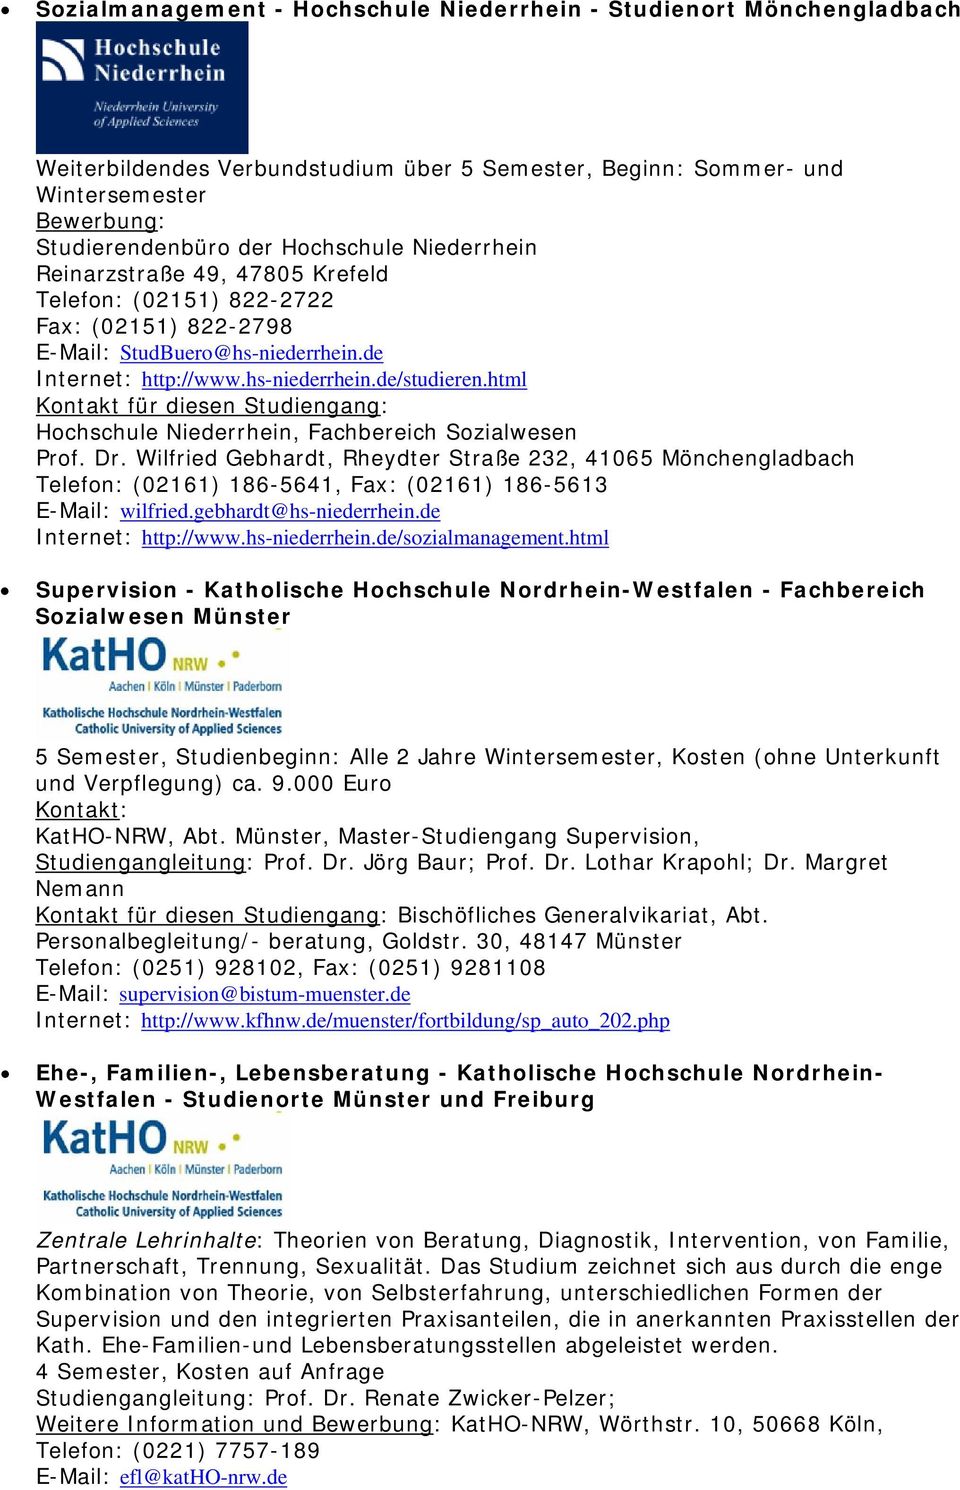 html Hochschule Niederrhein, Fachbereich Sozialwesen Prof. Dr. Wilfried Gebhardt, Rheydter Straße 232, 41065 Mönchengladbach Telefon: (02161) 186-5641, Fax: (02161) 186-5613 E-Mail: wilfried.